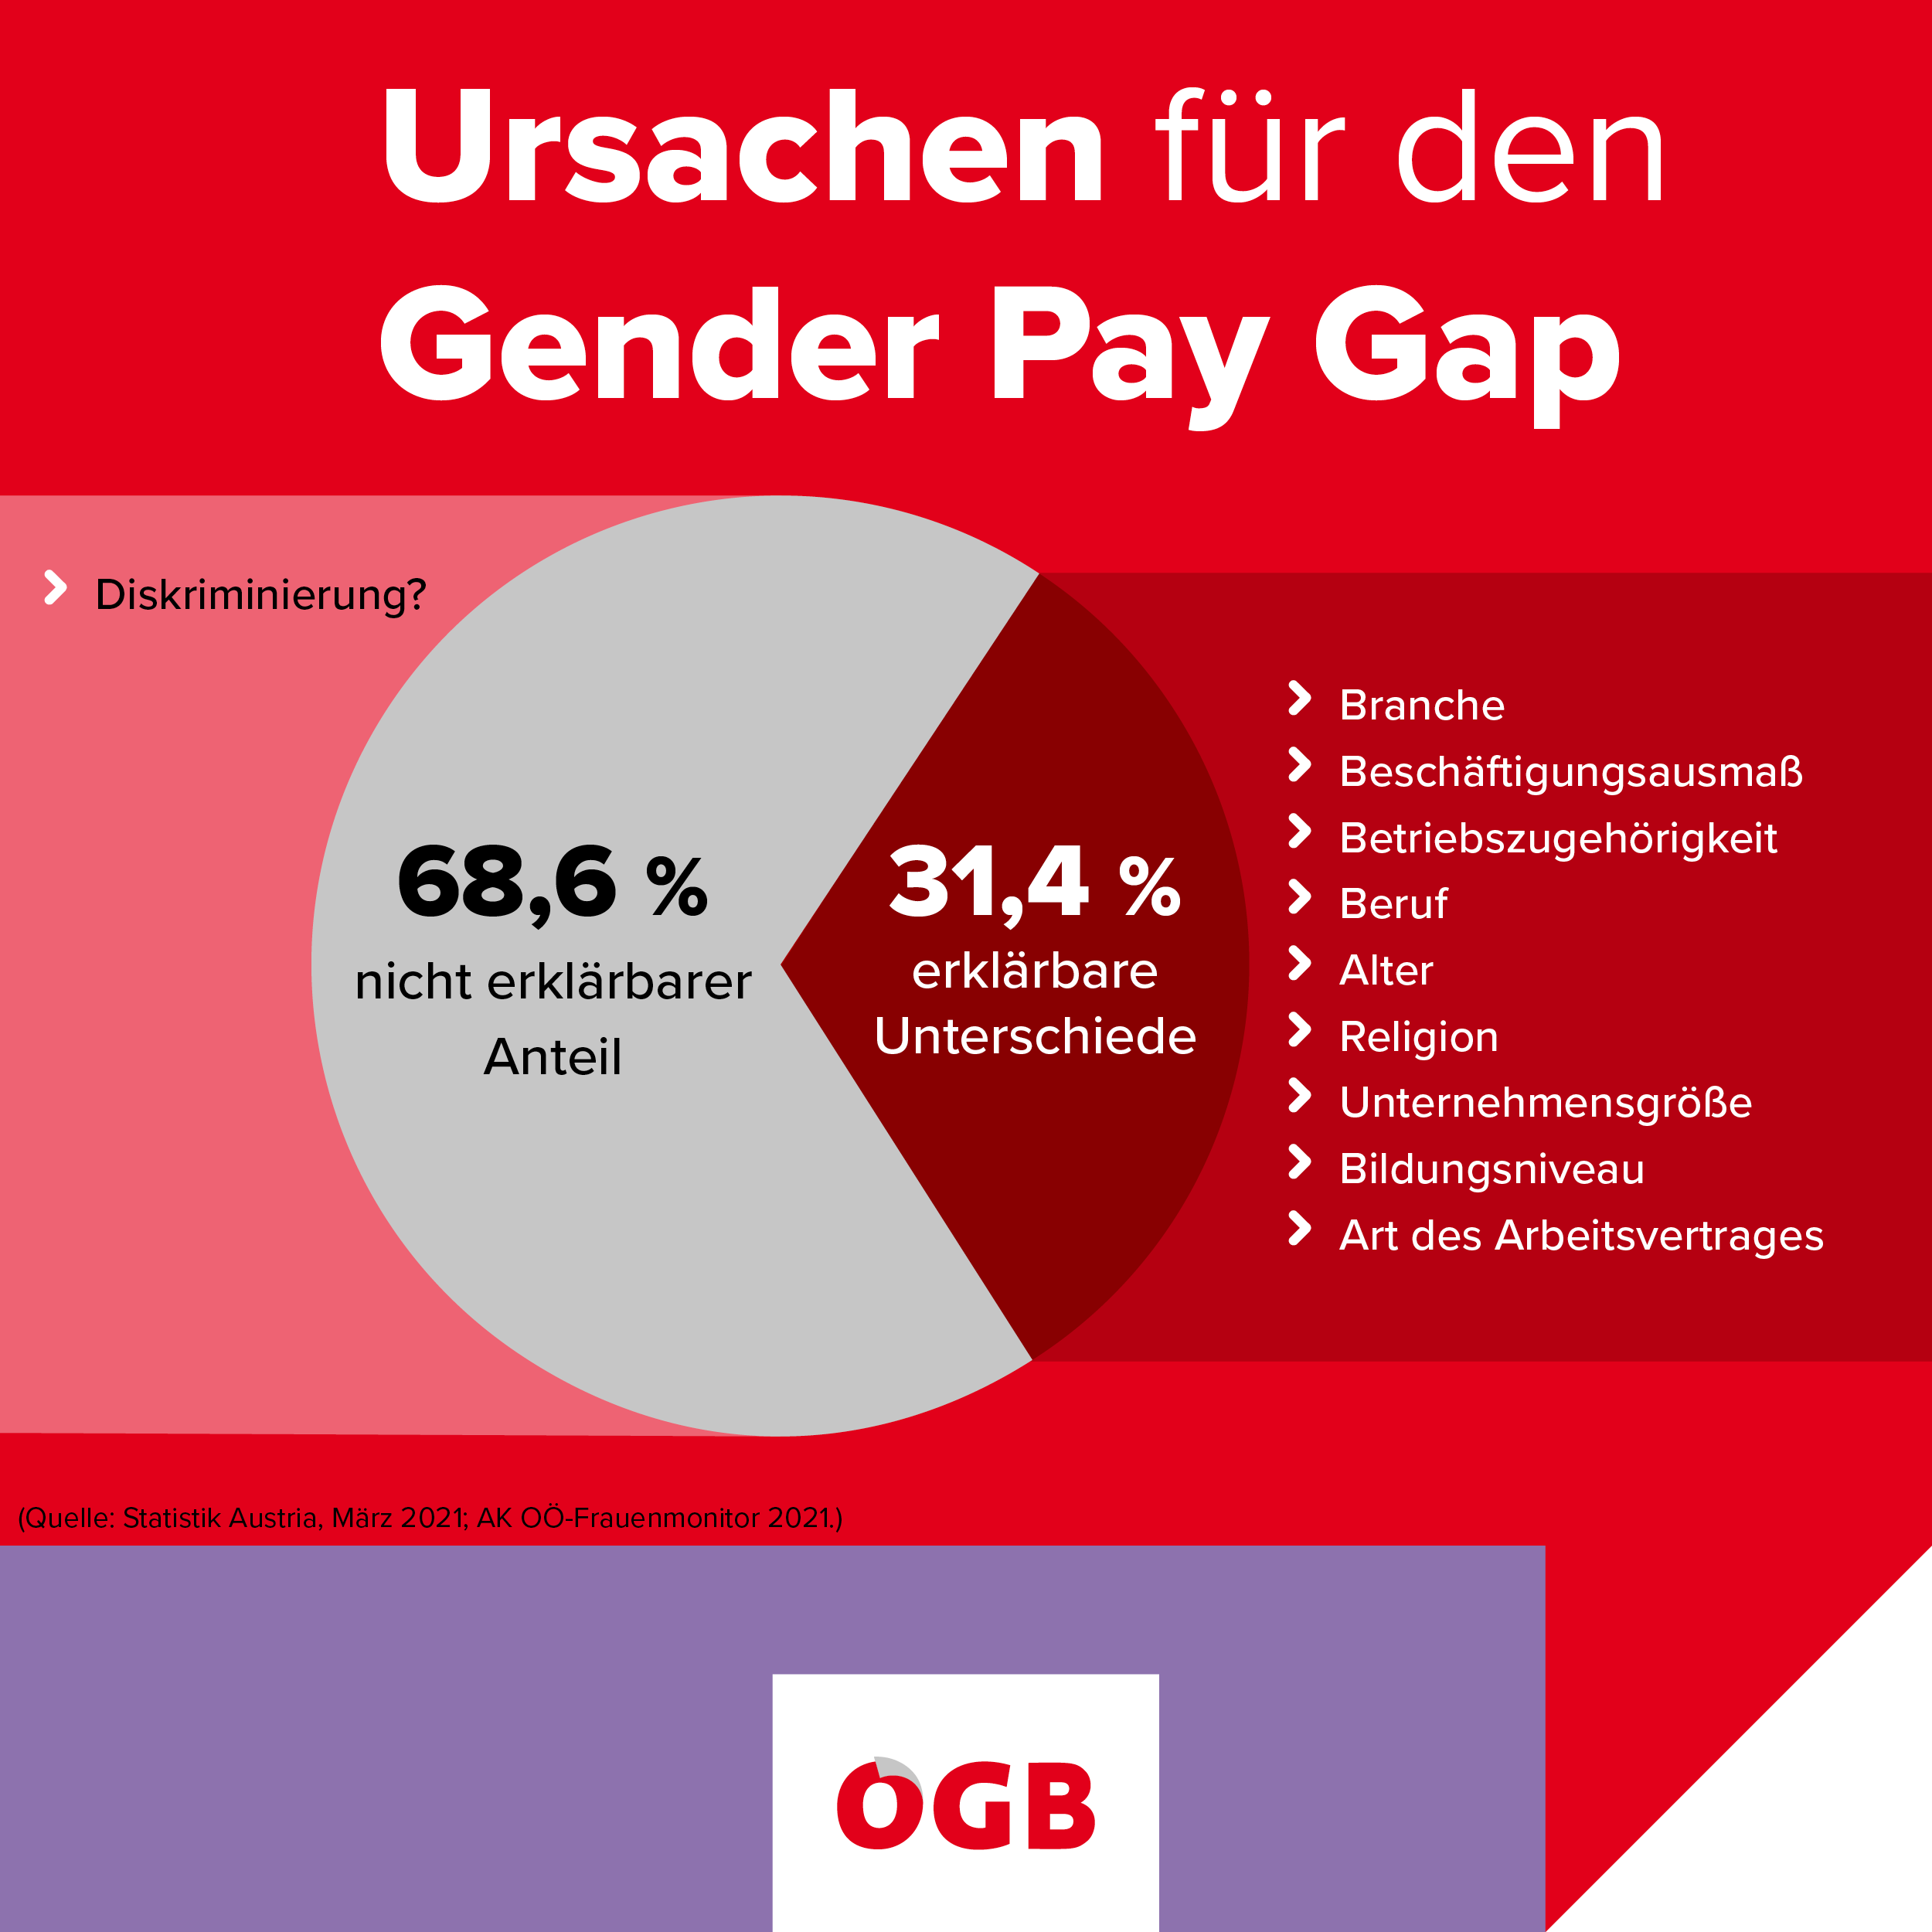 Ursachen für den Gender Pay Gap.